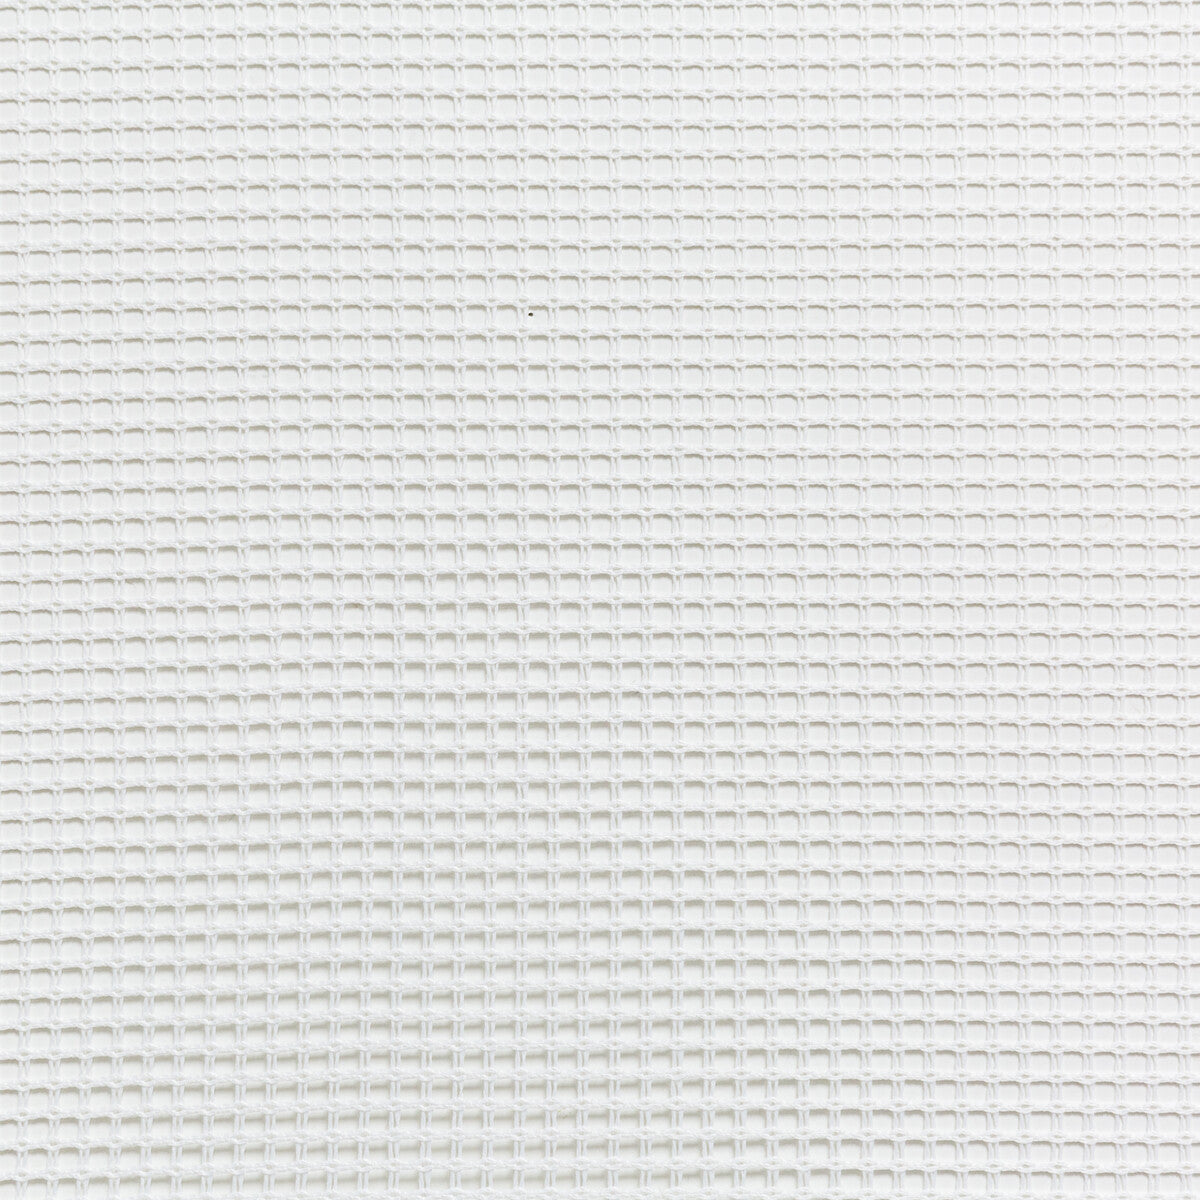 Kravet Basics fabric in 4713-101 color - pattern 4713.101.0 - by Kravet Basics